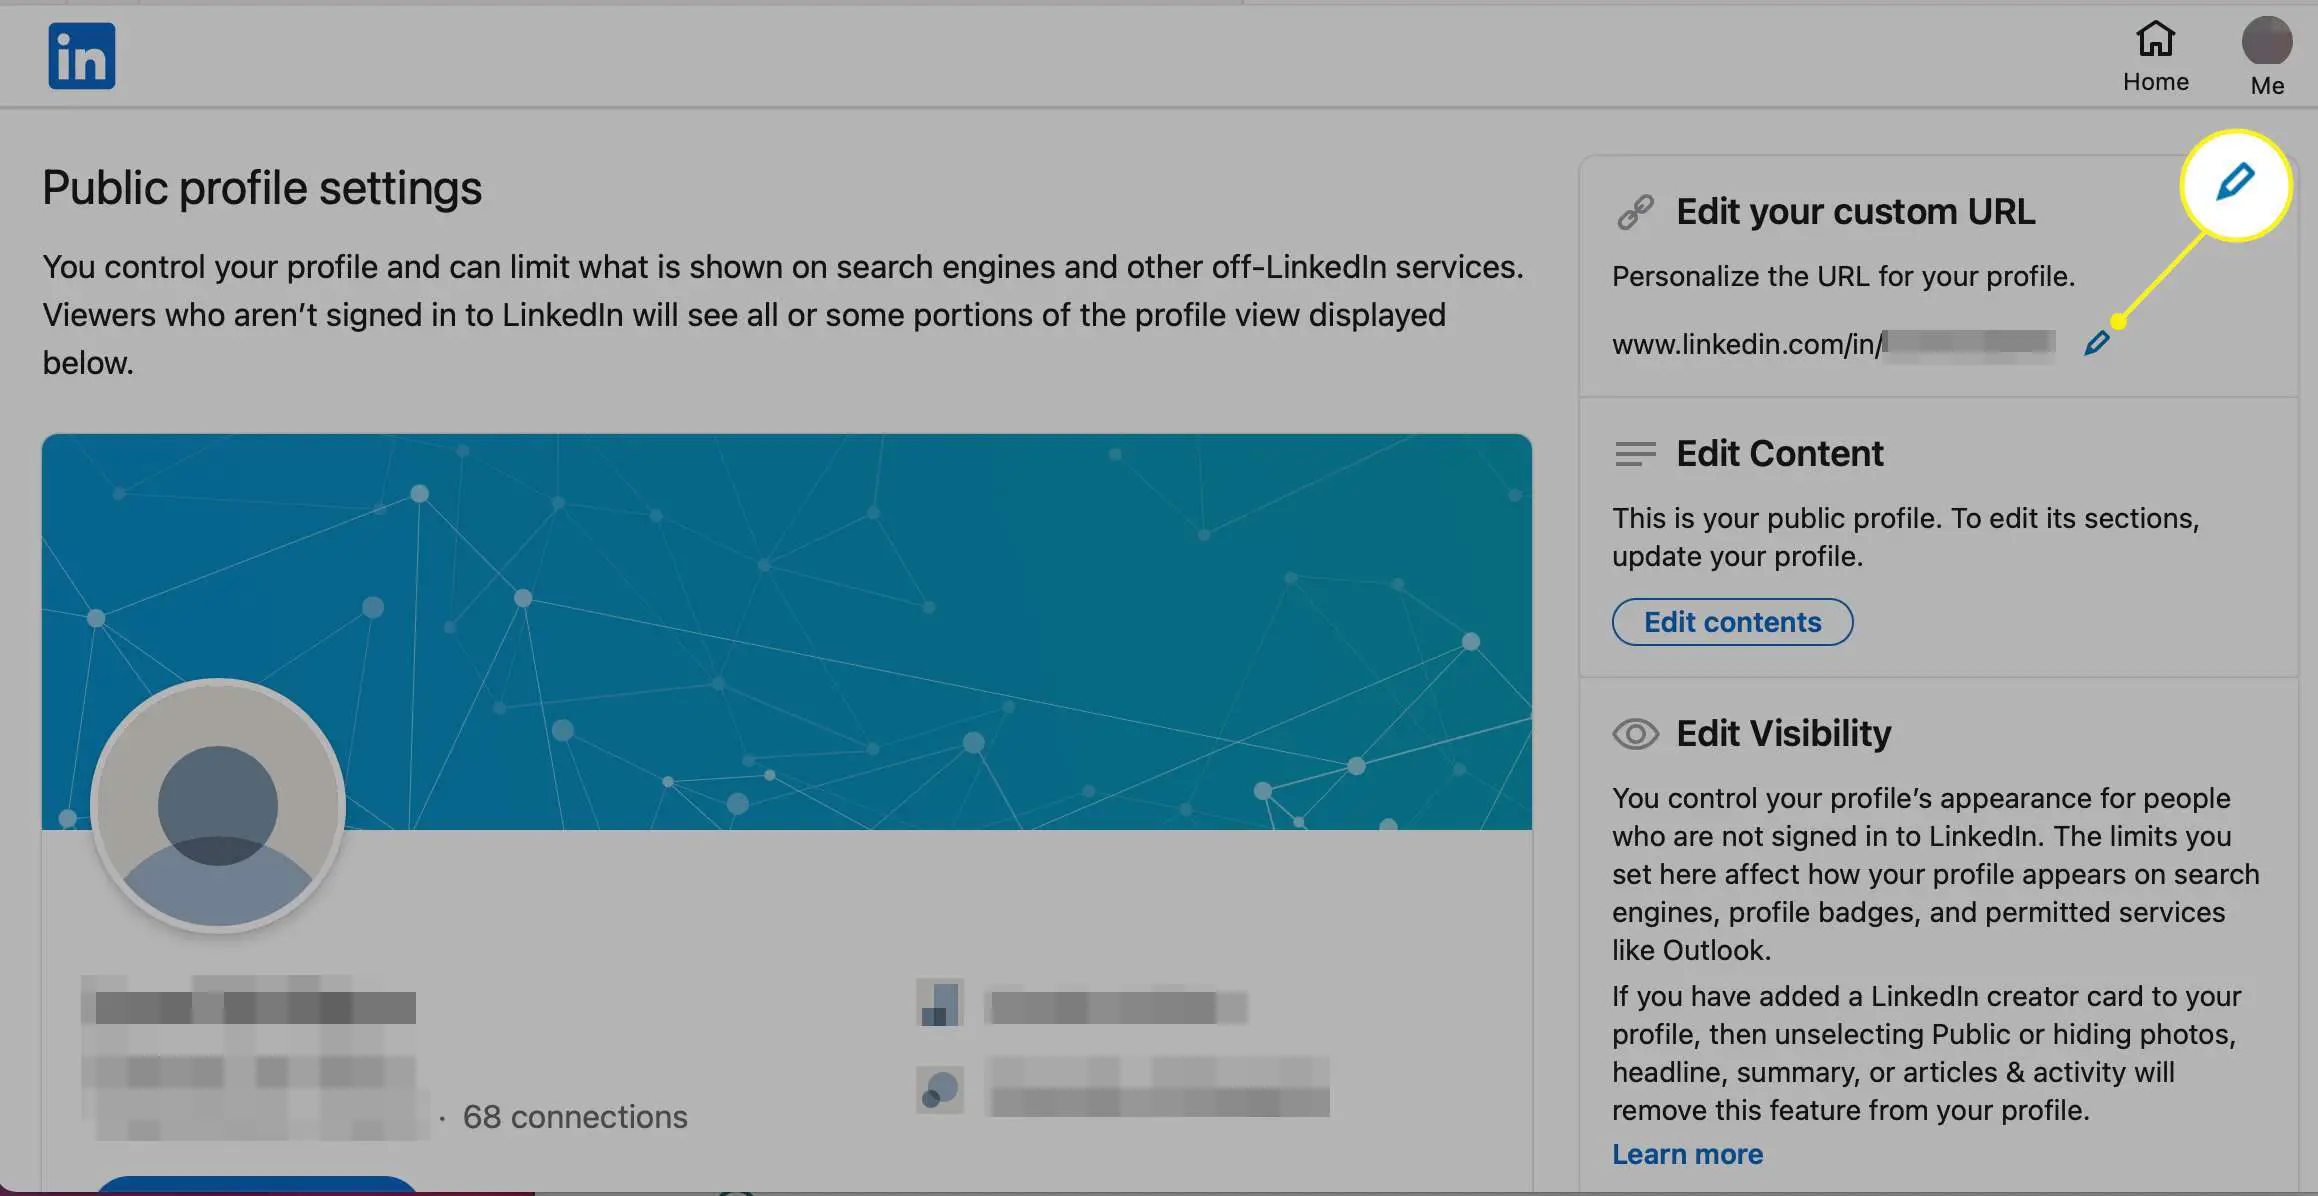 Edite seu campo de URL personalizado no LinkedIn